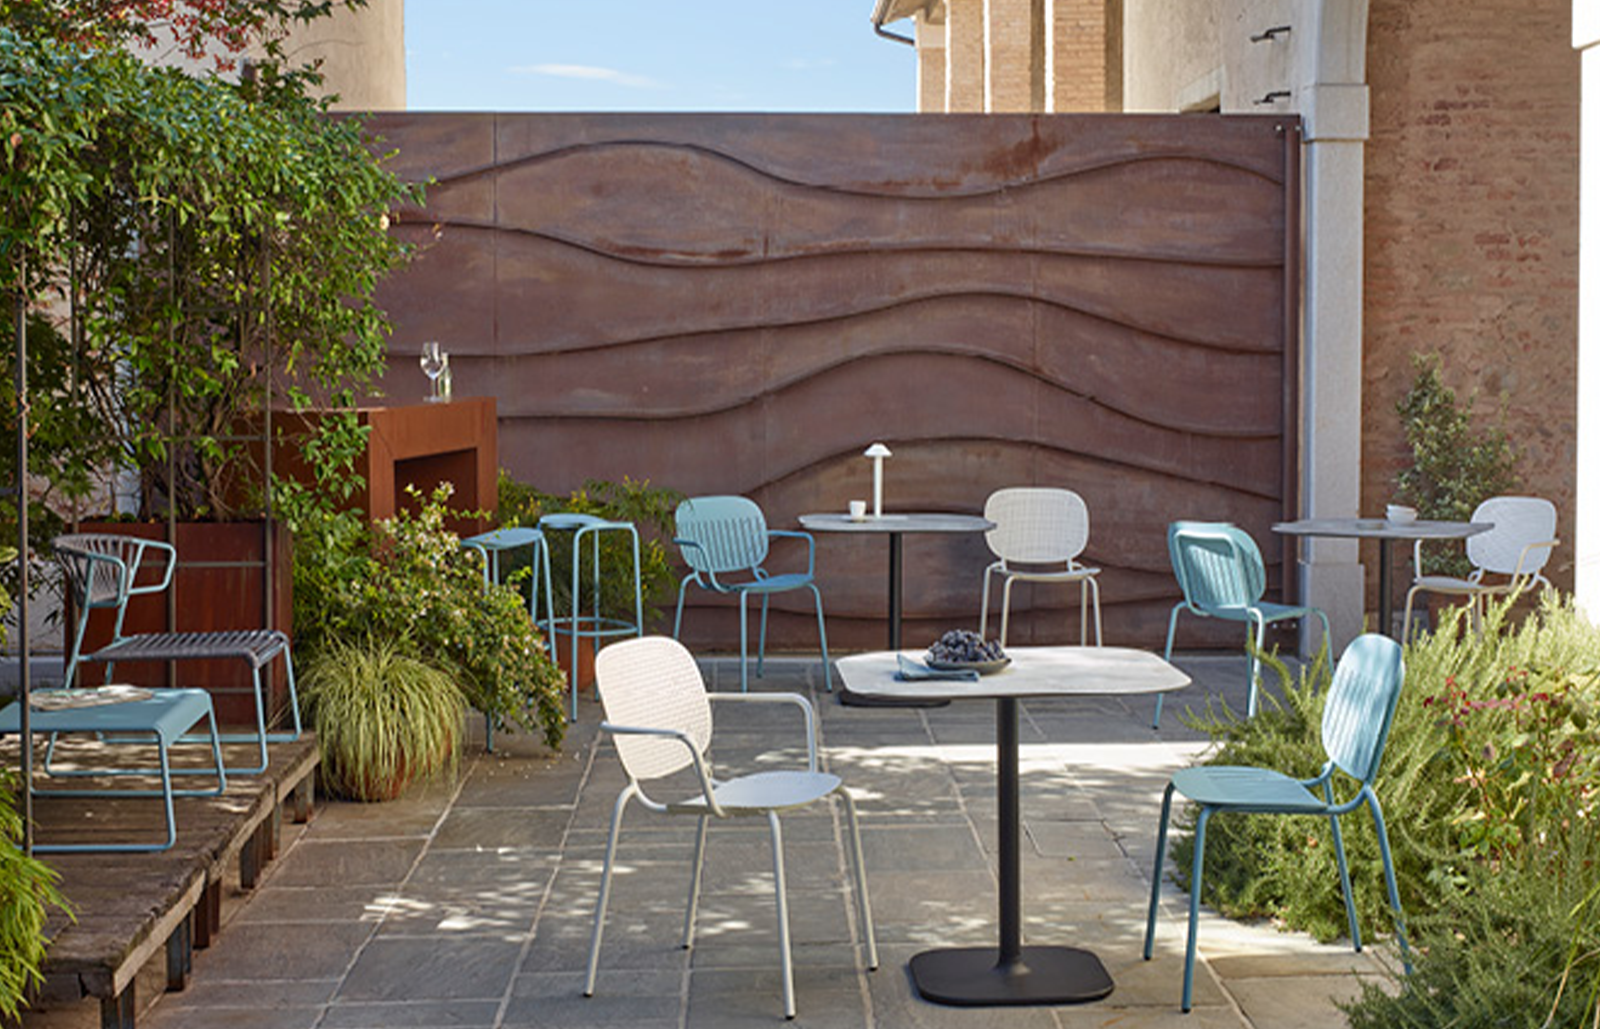 sancilio evotech molfetta - ambientazioni outdoor arredo giardino sedie sedute poltrone divani complementi lounge SCAB